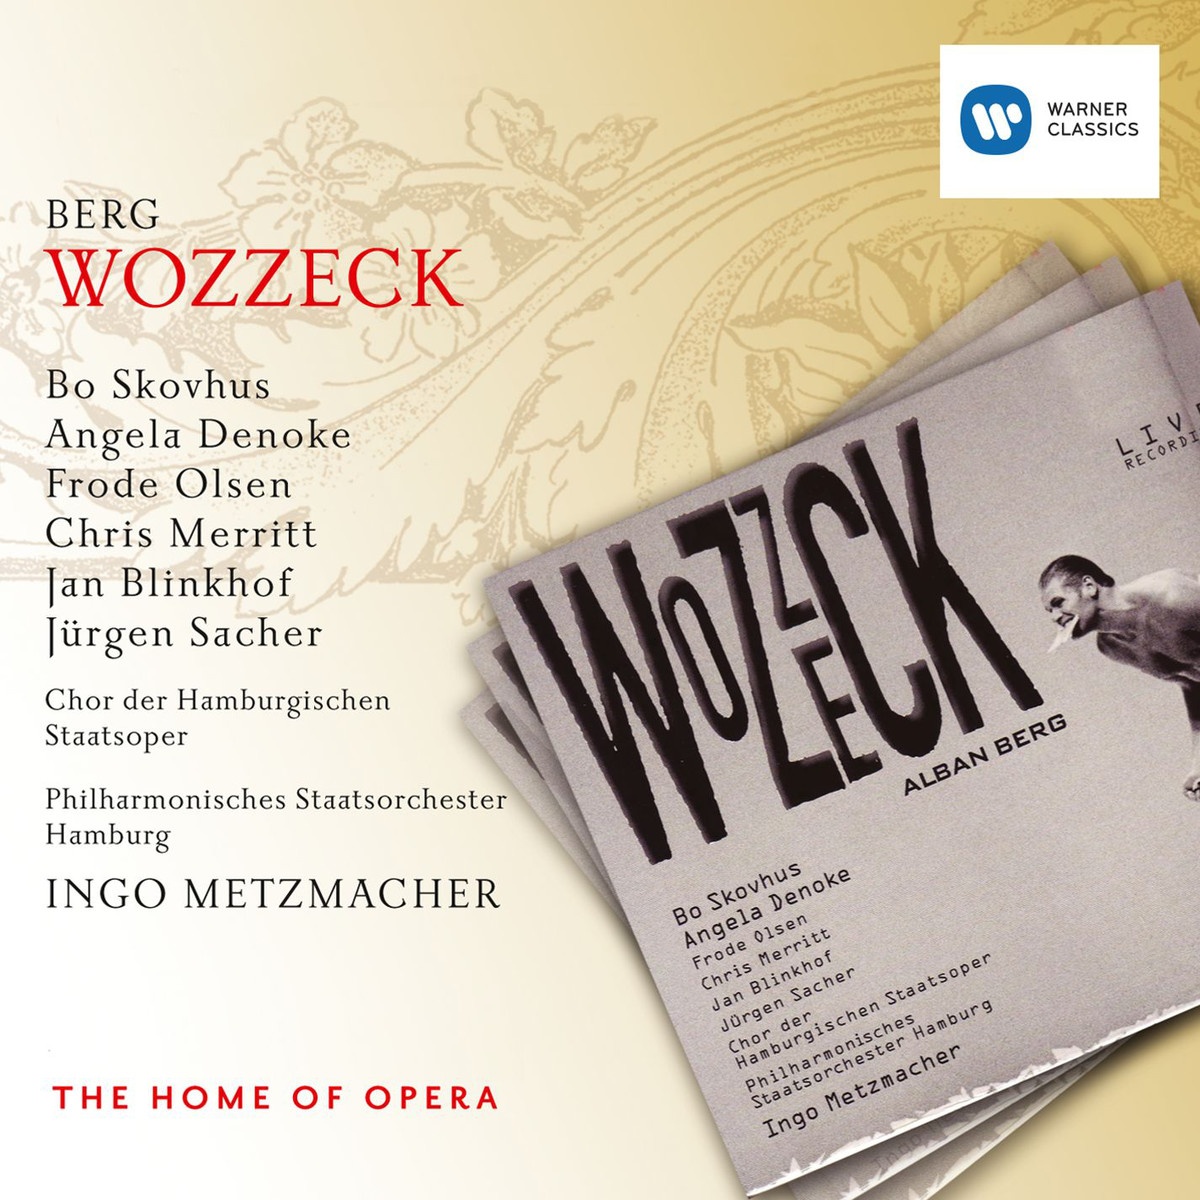 Wozzeck  Oper in 3 Akten, Erster Akt: Langsam, Wozzeck, langsam 1. Szene: Hauptmann  Wozzeck